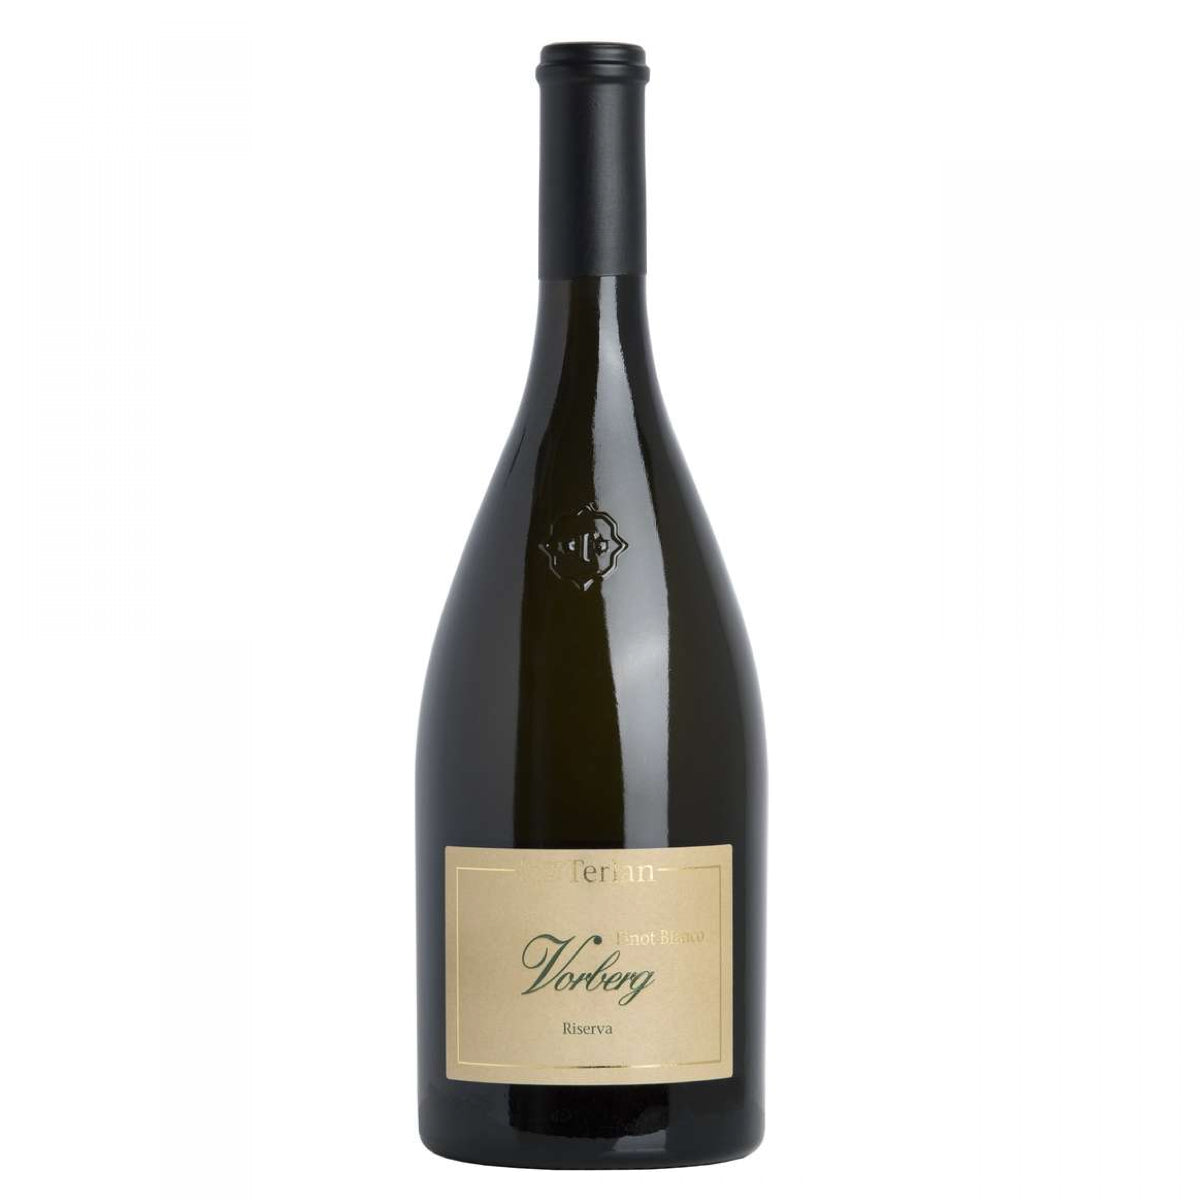 Laciviltadelbere Alto Adige Doc Pinot Bianco Riserva "Vorberg" 2020- Cantine Terlano